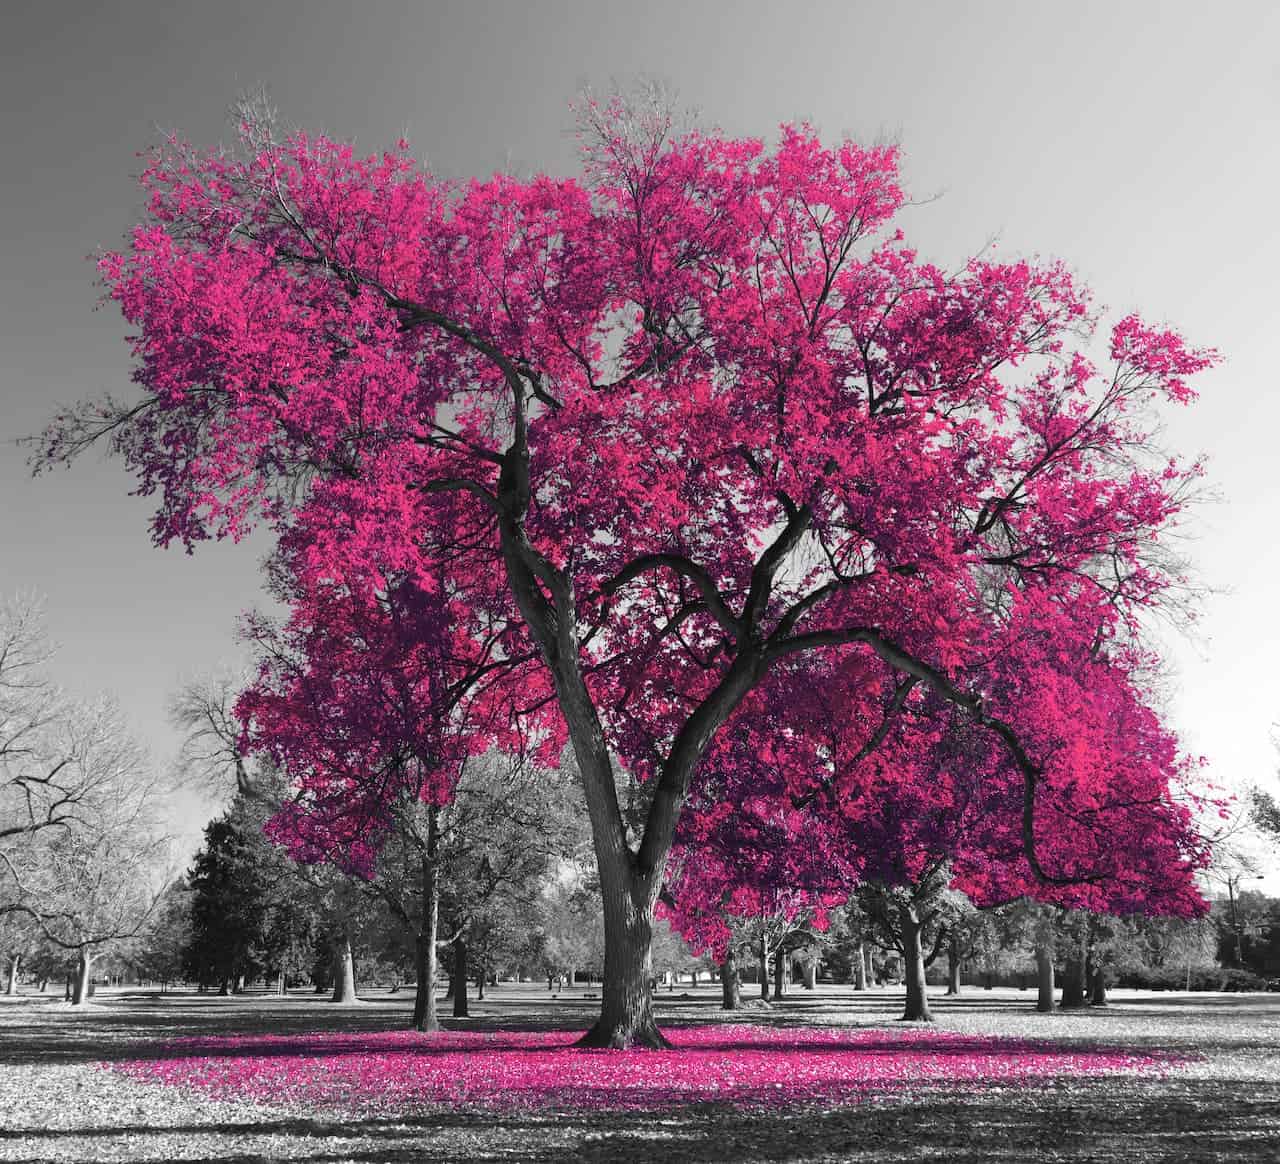 Une image aux couleurs vives montrant un grand arbre aux feuilles rose vif se dressant sur un fond noir et blanc d'un parc, représentant l'ignorance, avec une dispersion de feuilles roses sur le sol en dessous.